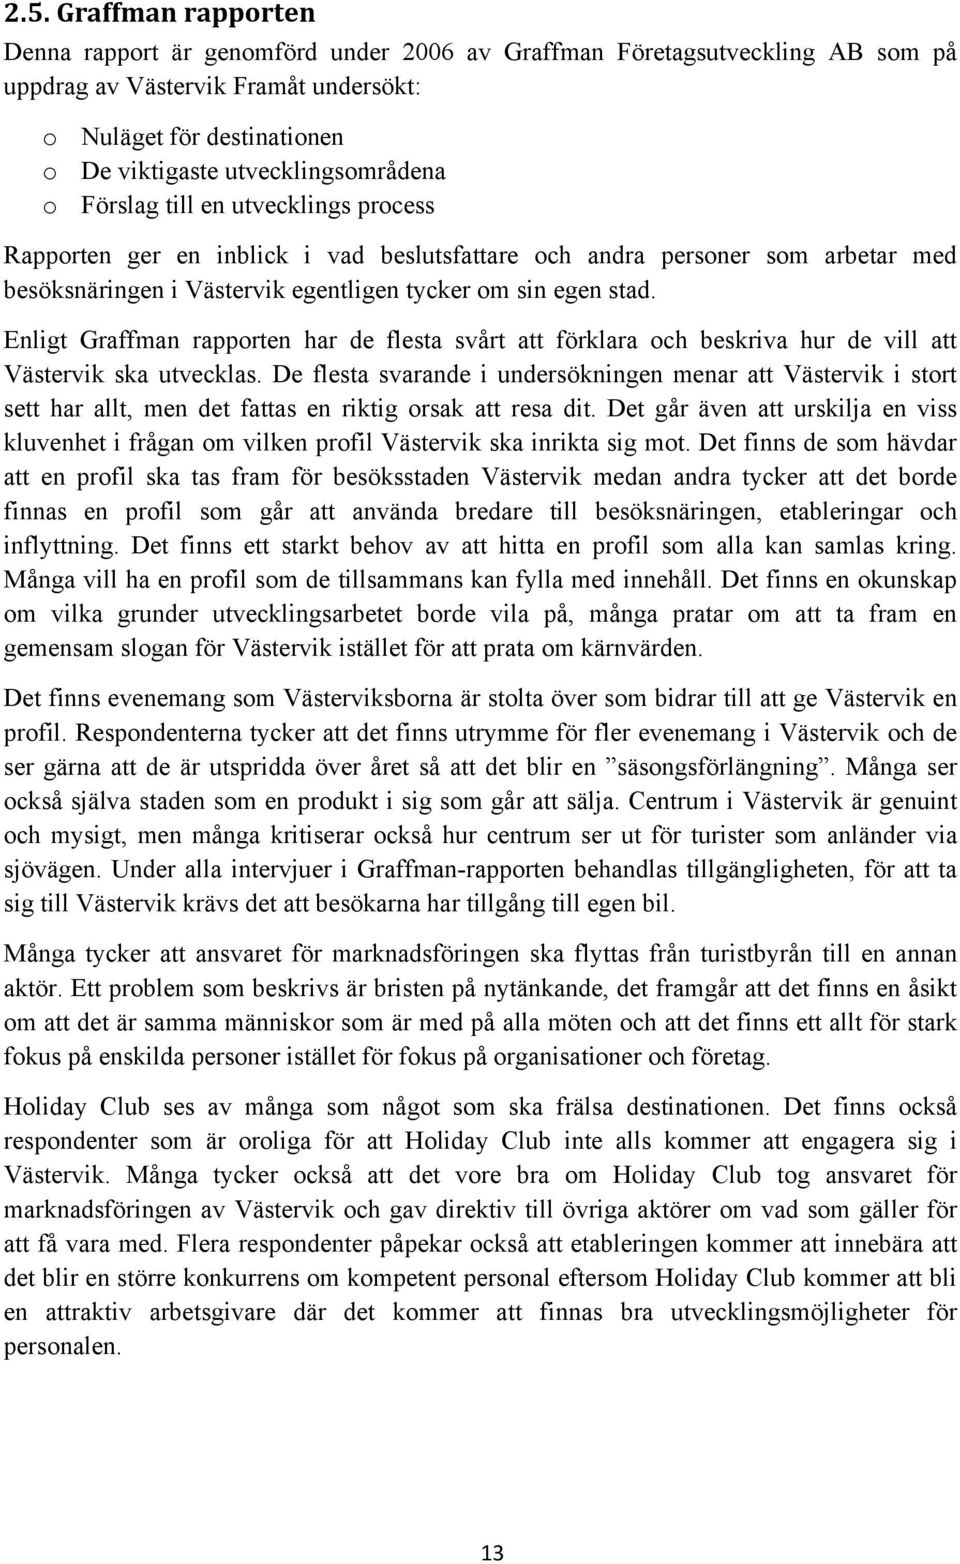 stad. Enligt Graffman rapporten har de flesta svårt att förklara och beskriva hur de vill att Västervik ska utvecklas.